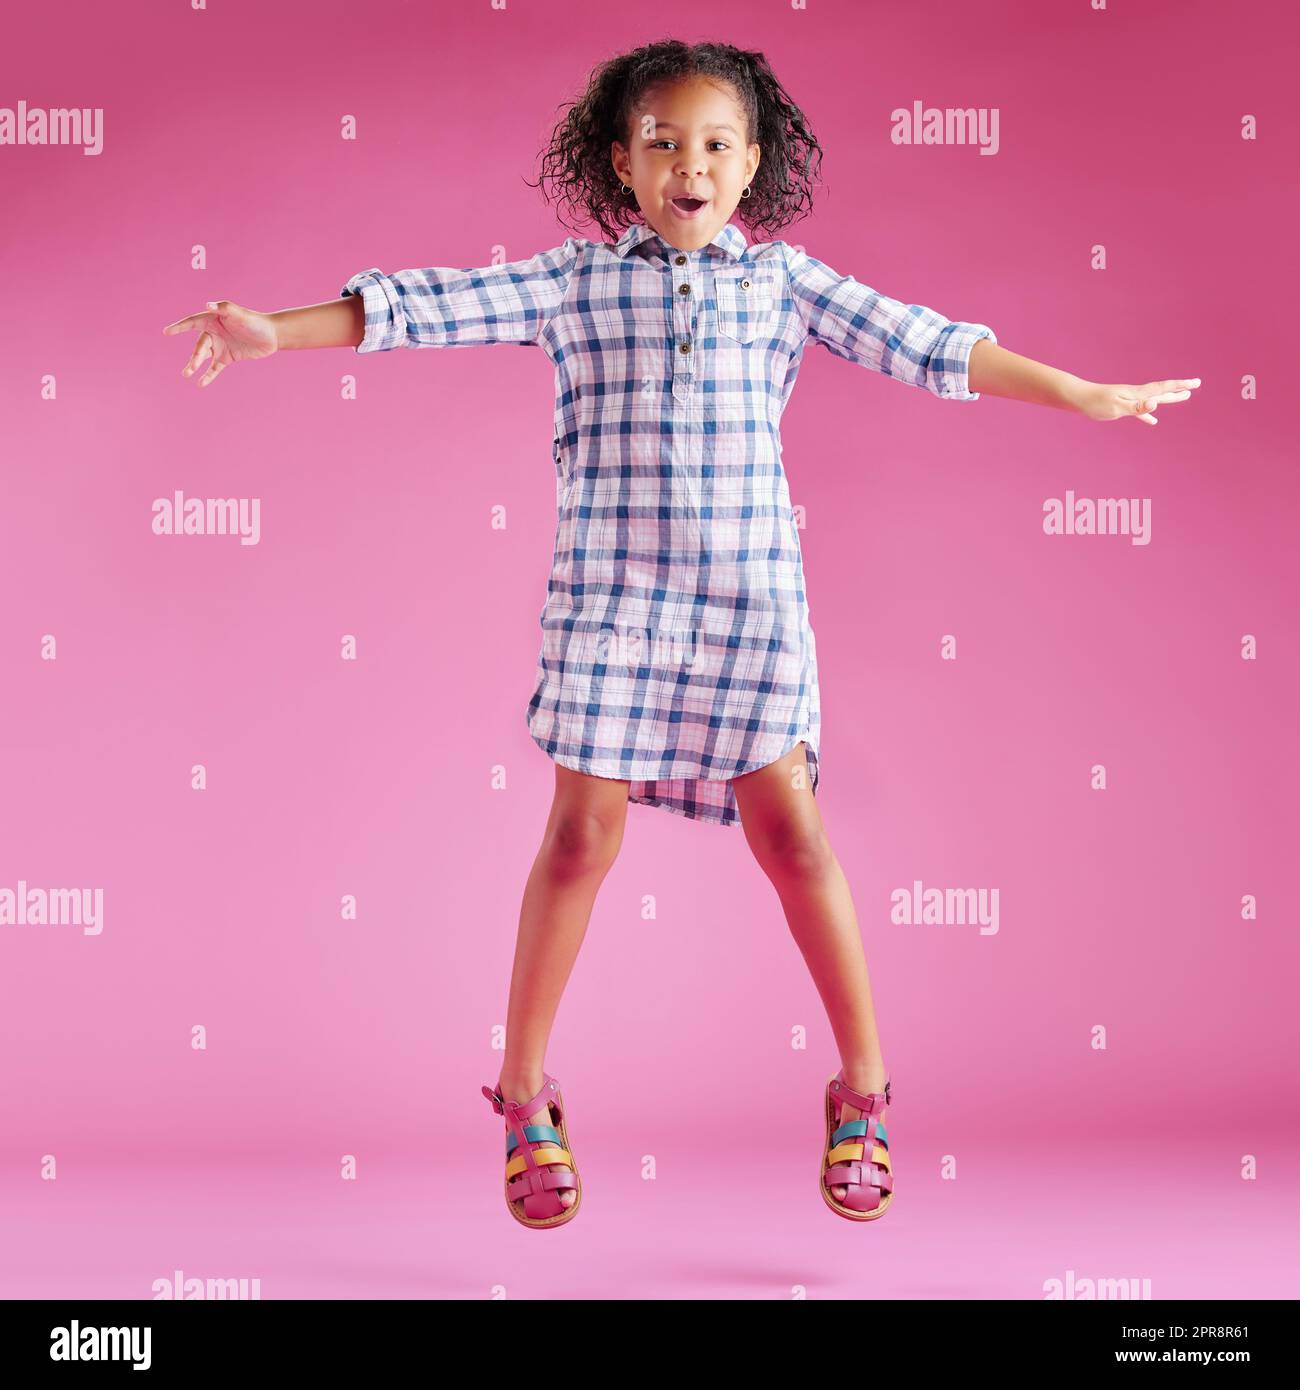 Ein hübsches, gemischtes Rennmädchen mit lockigem Haar feiert und tanzt vor einem pinkfarbenen Hintergrund in einem Studio. Afrikanisches Kind springt und fühlt sich frei Stockfoto